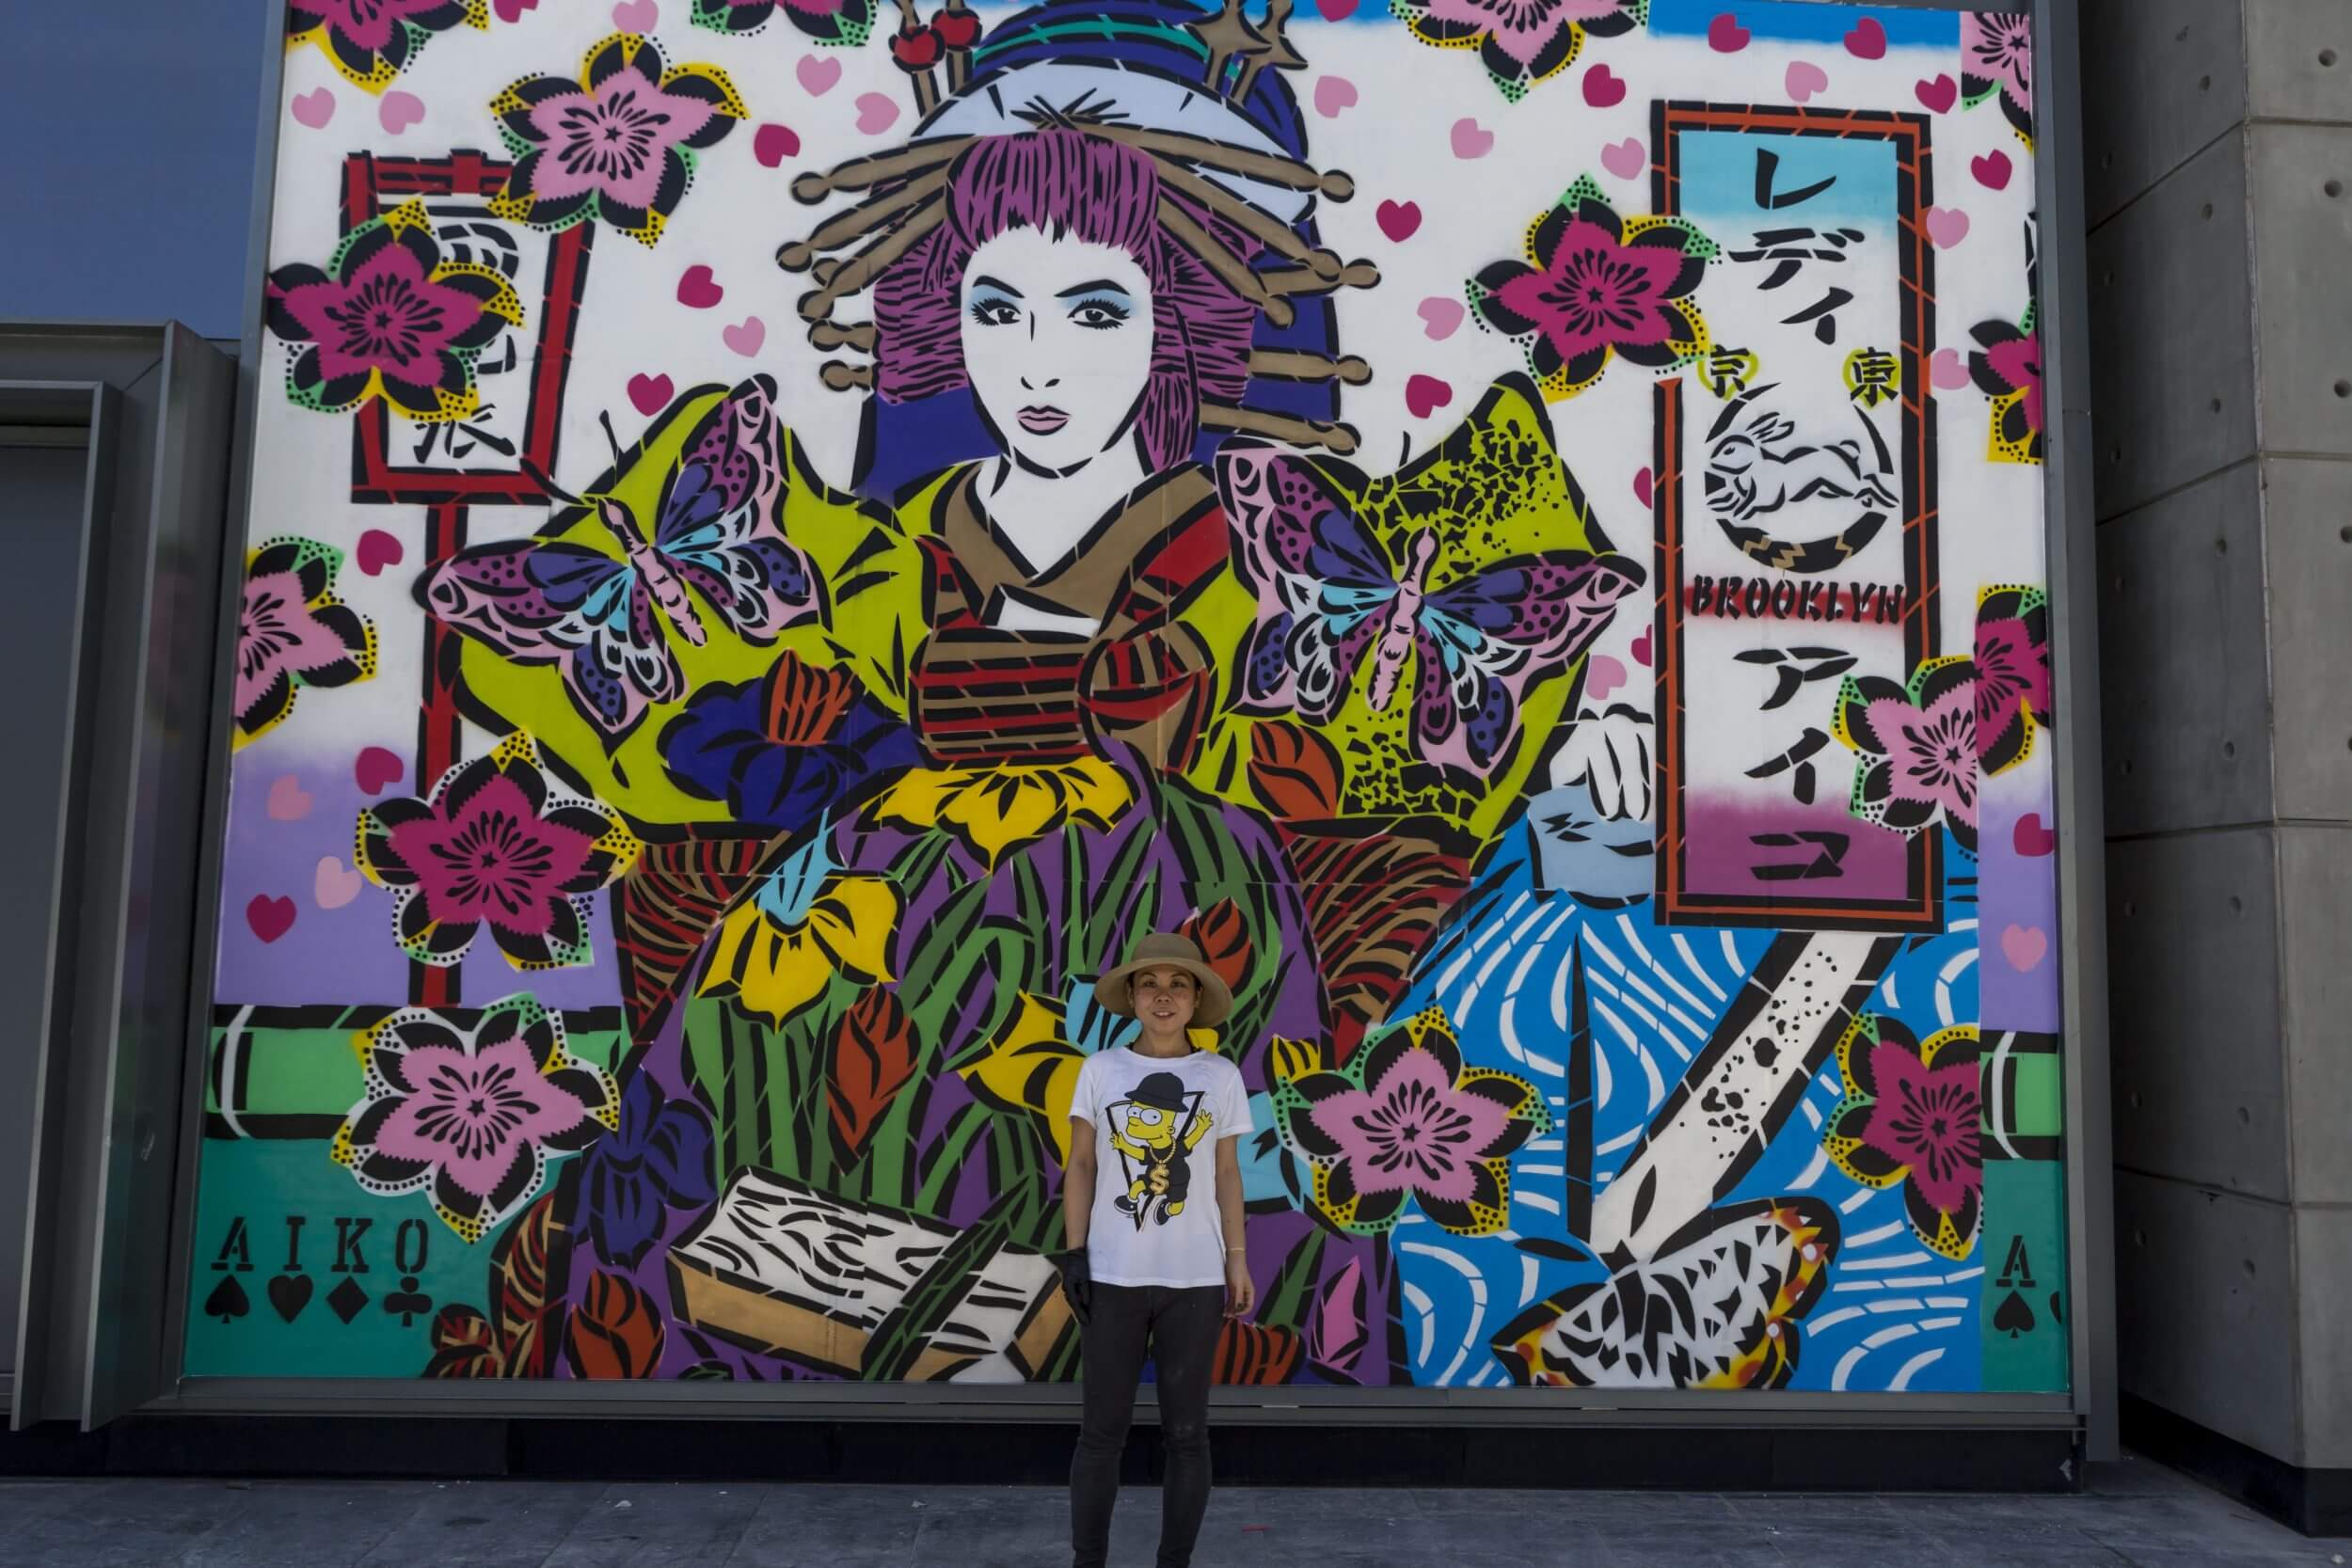 Street Art Event Celebrating Women's Resilience